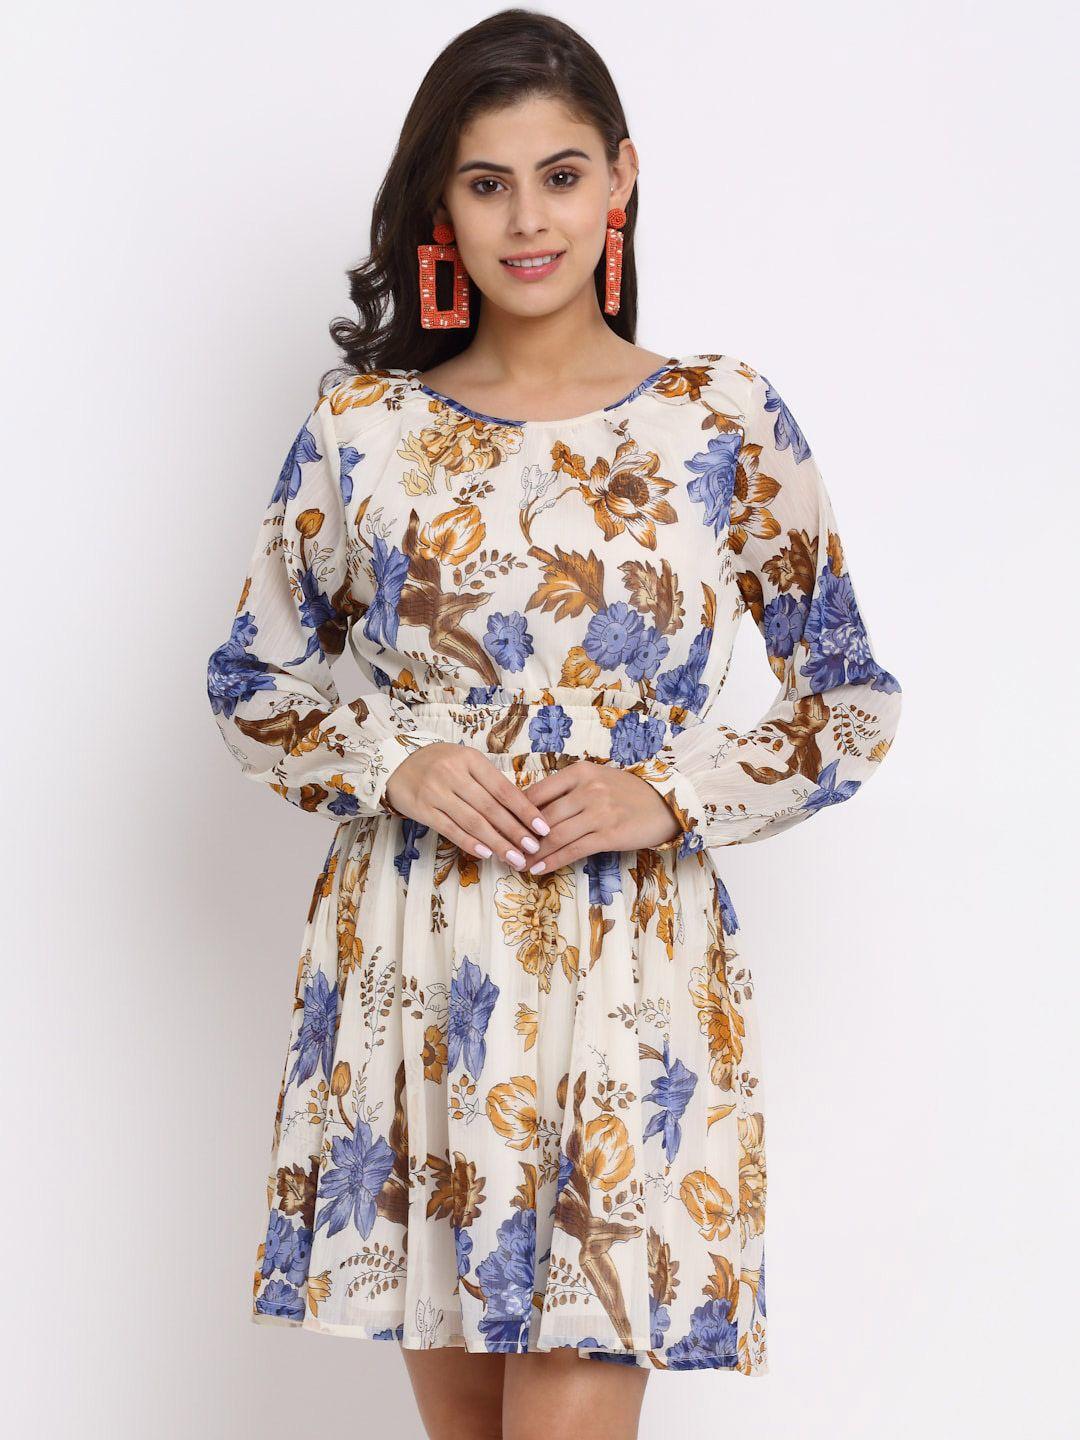 neudis floral chiffon blouson dress